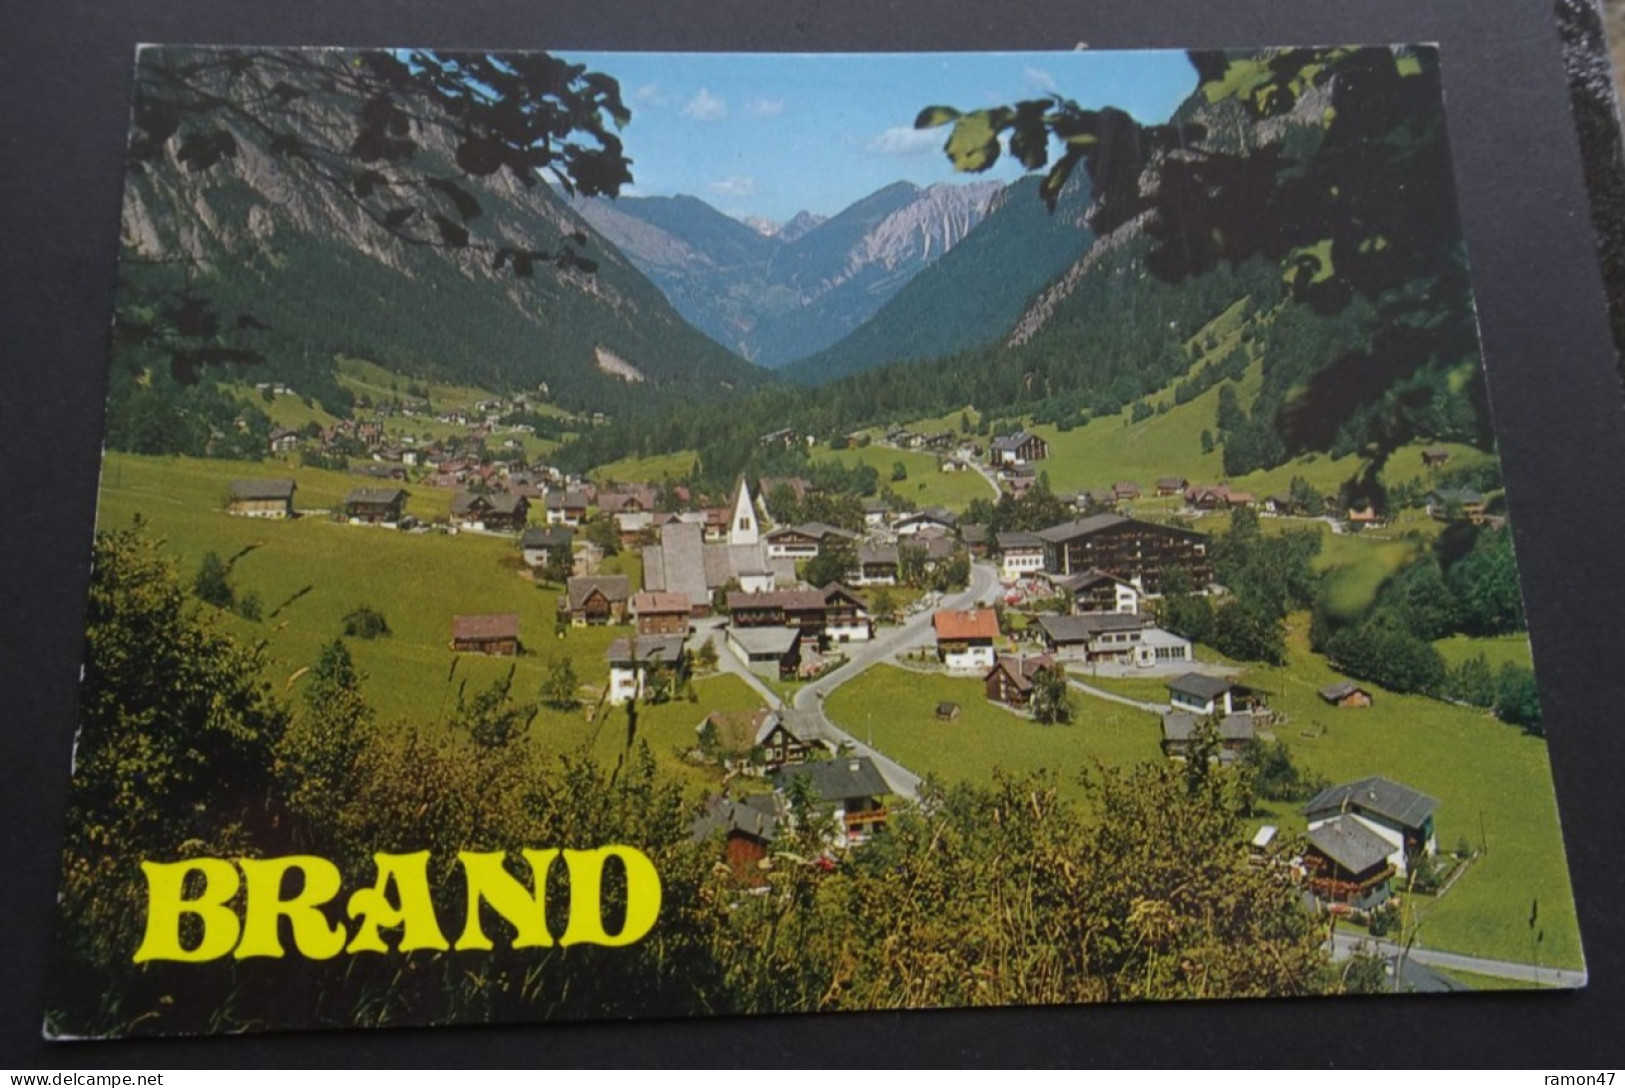 Brand 1050 M Im Brandnertal - Farbaufnahme Und Verlag Foto Branz, Lustenau - # 2372 - Brandertal